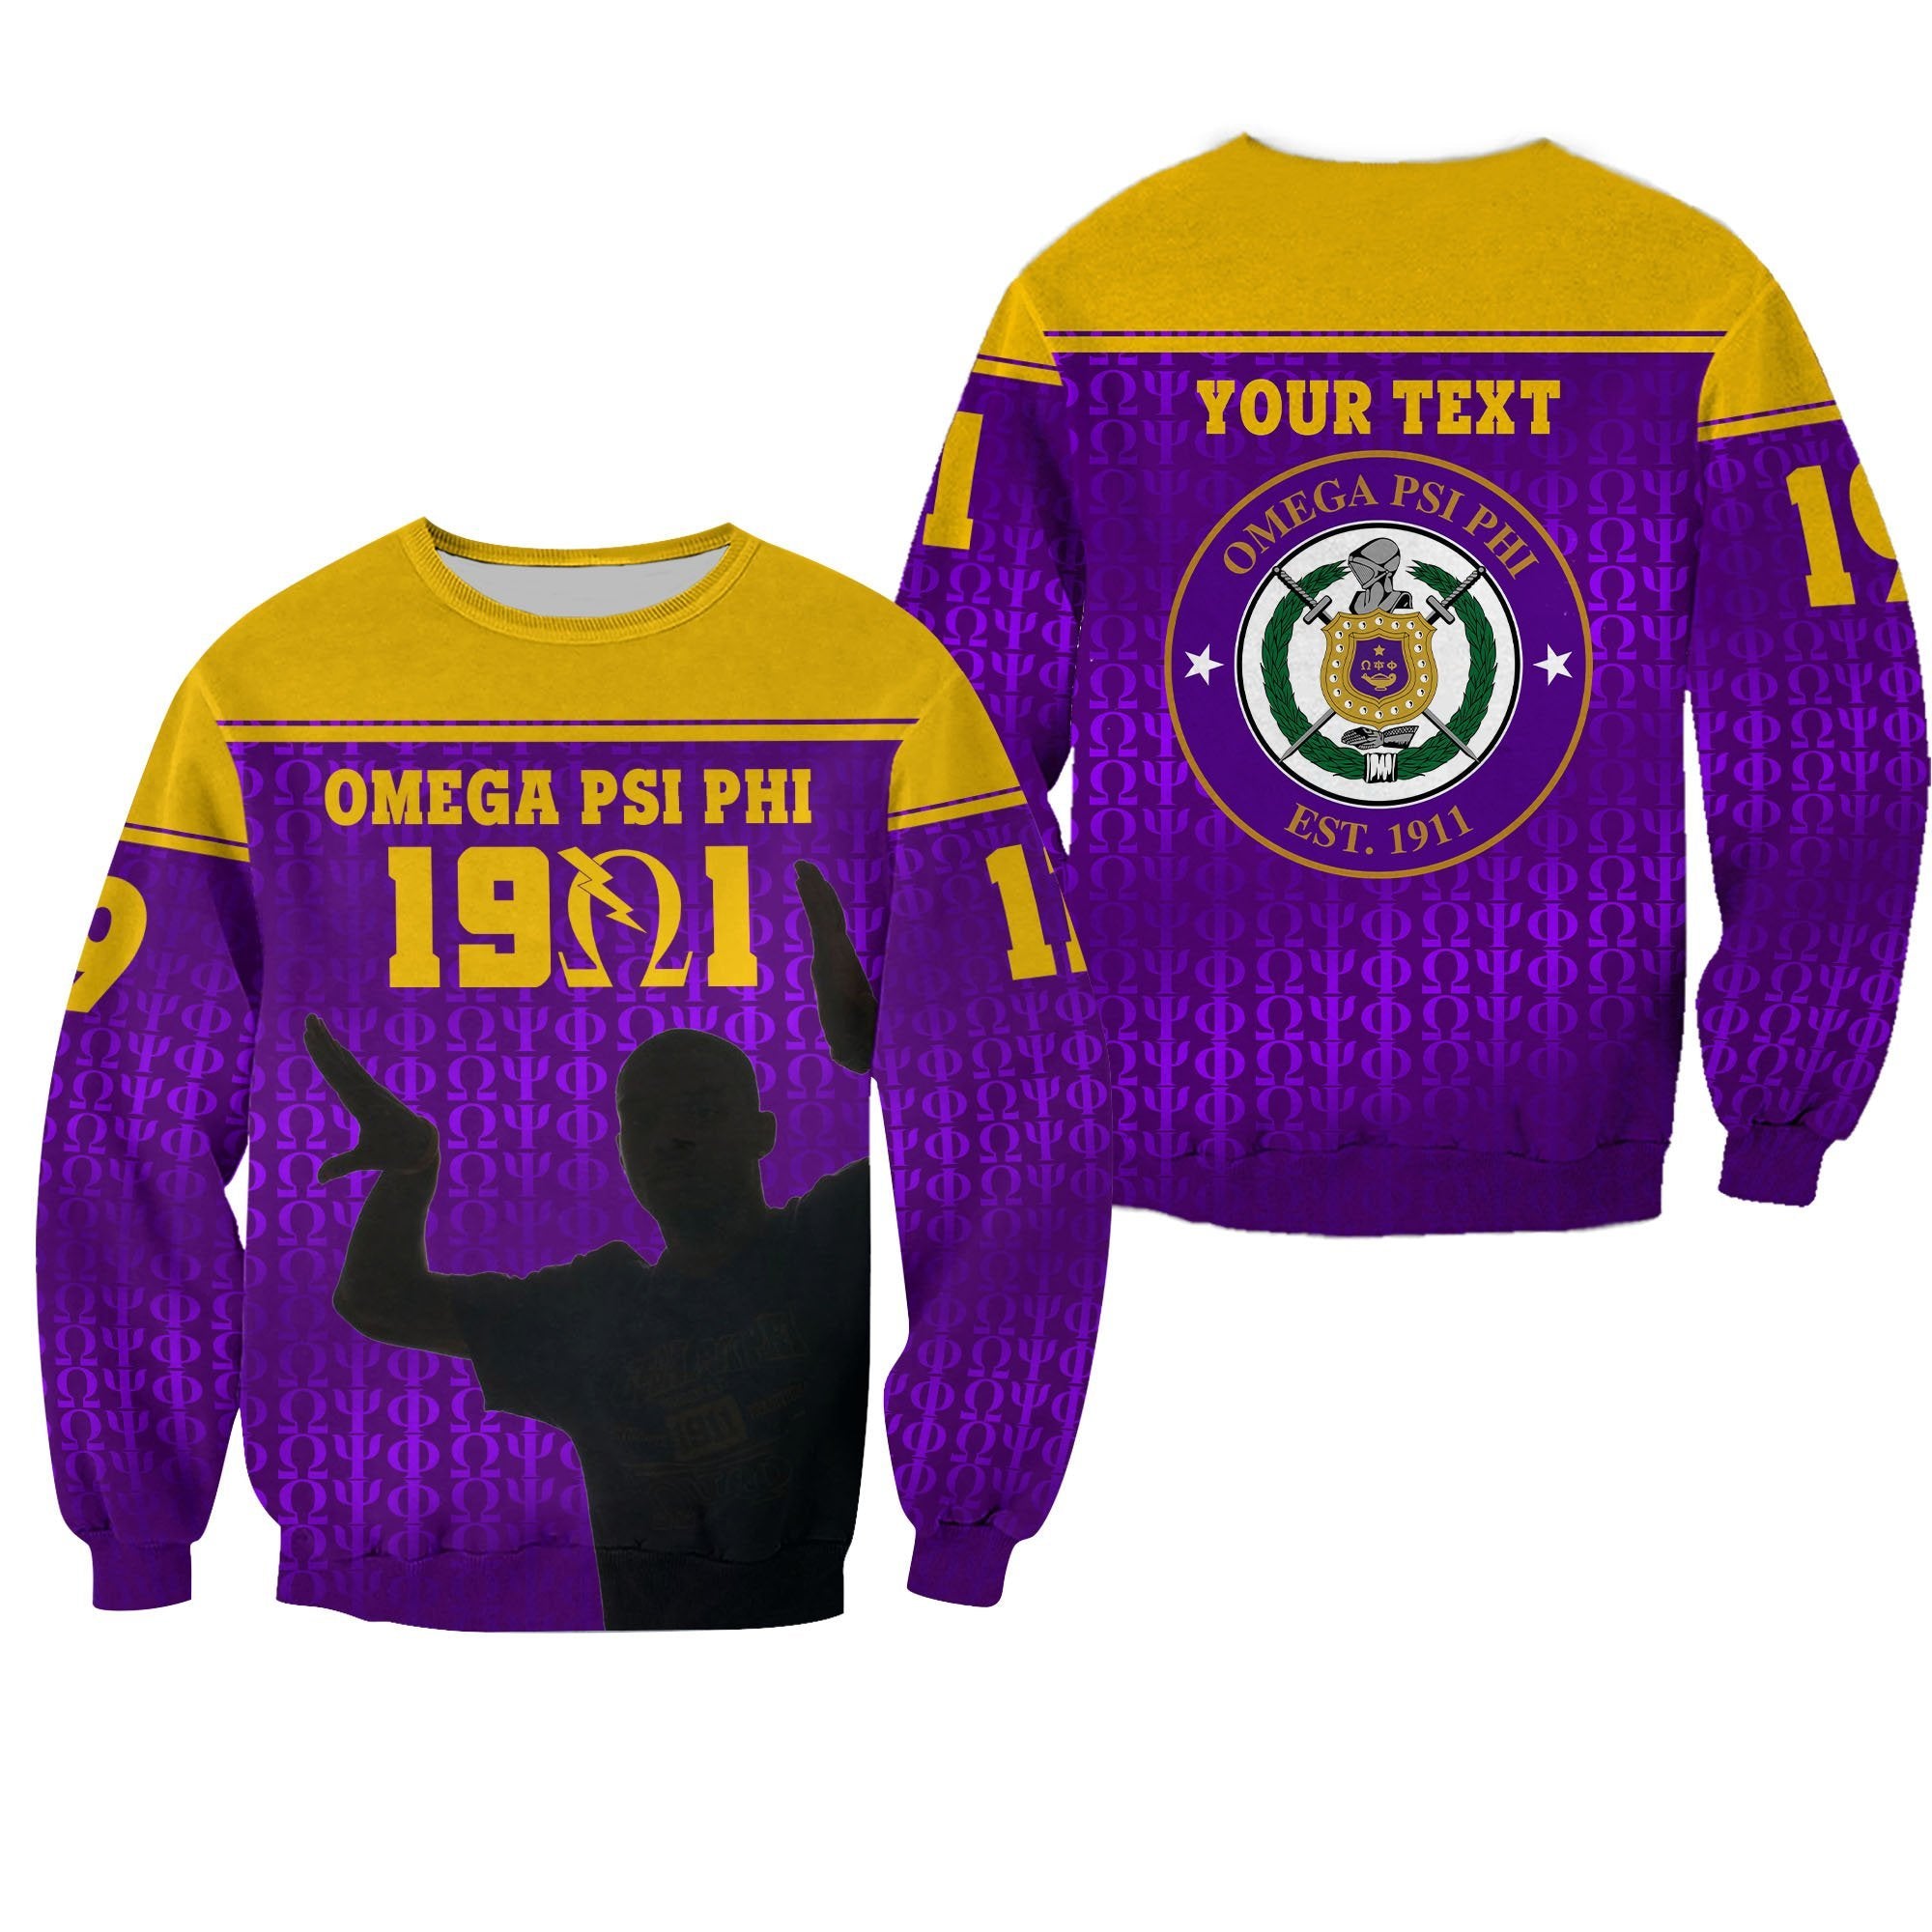 (Custom Personalised) Greek Life Sweatshirt – Omega Psi Phi Bull Dogs Simple Style Lt16